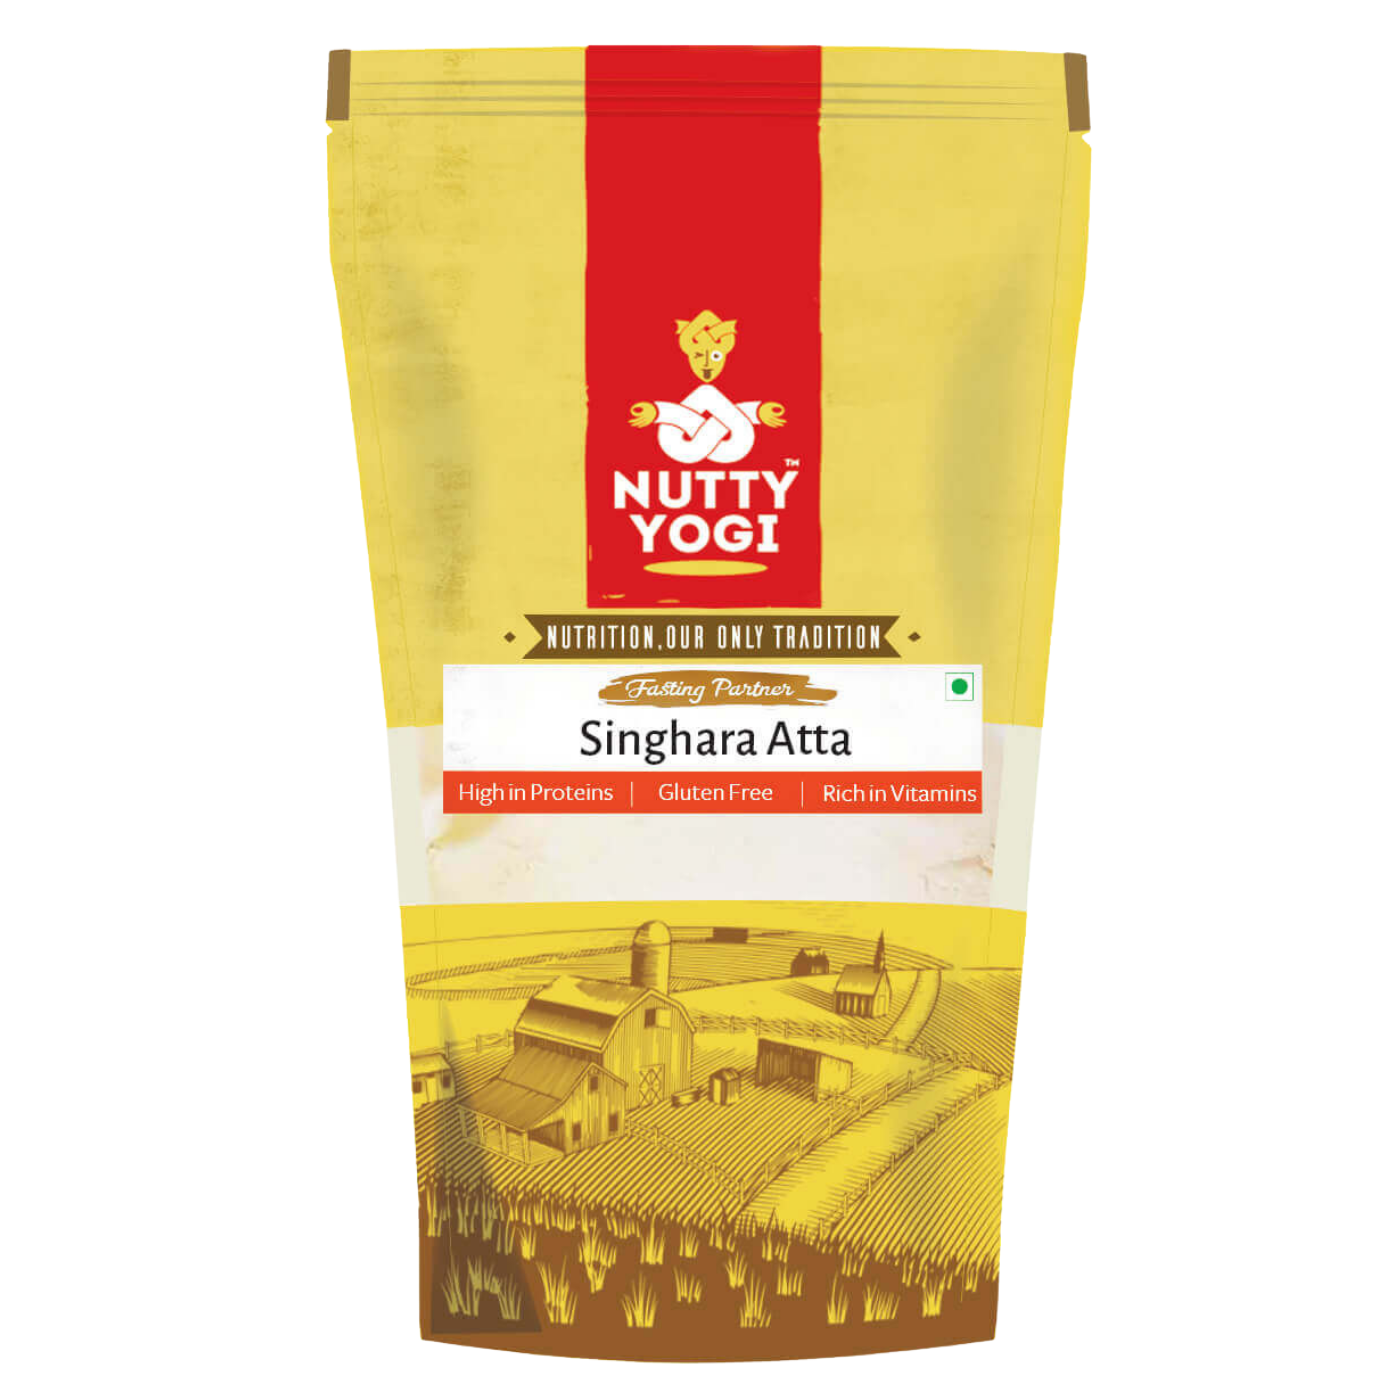 Nutty Yogi Singhara Atta